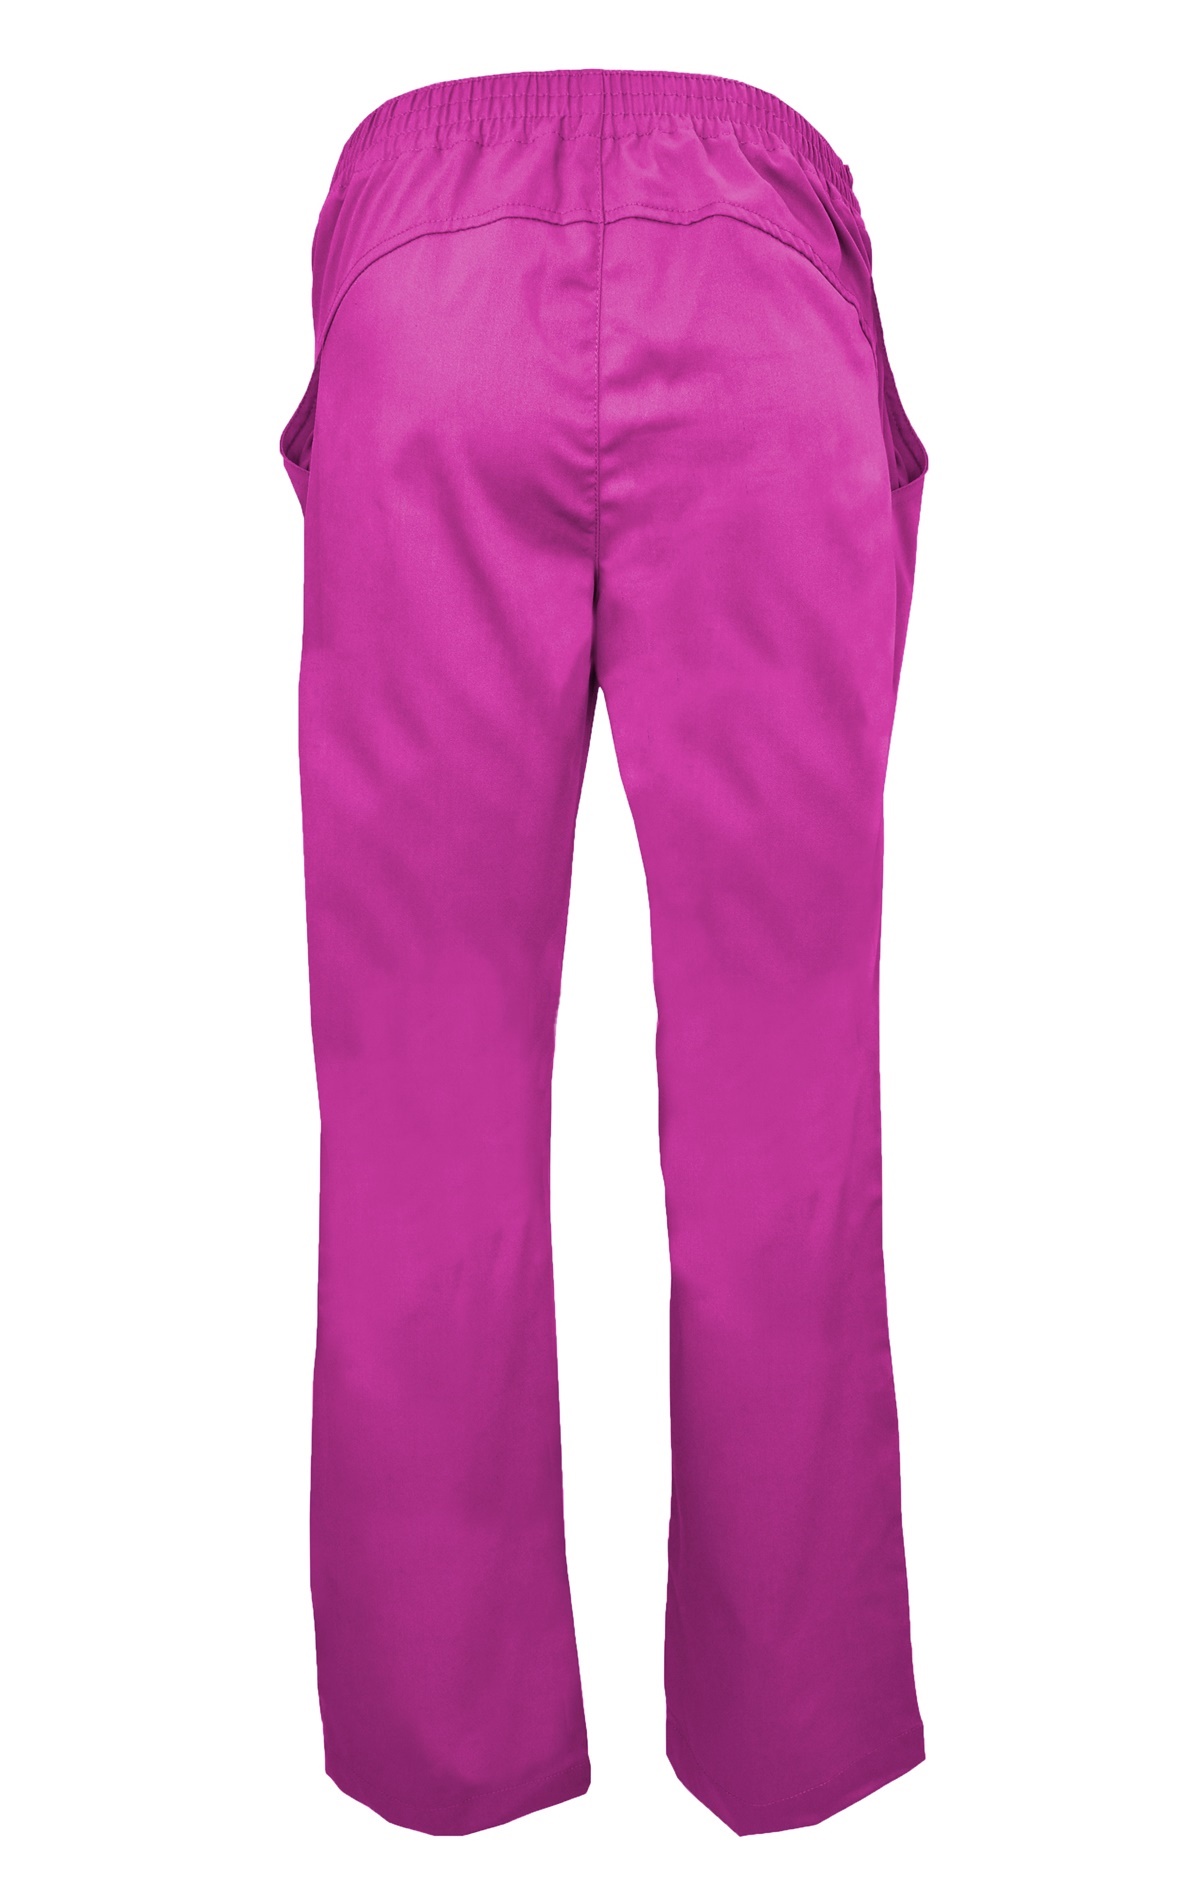 Hot Pink Drawstring Scrub Pant 2 Pocket - Natural Uniforms